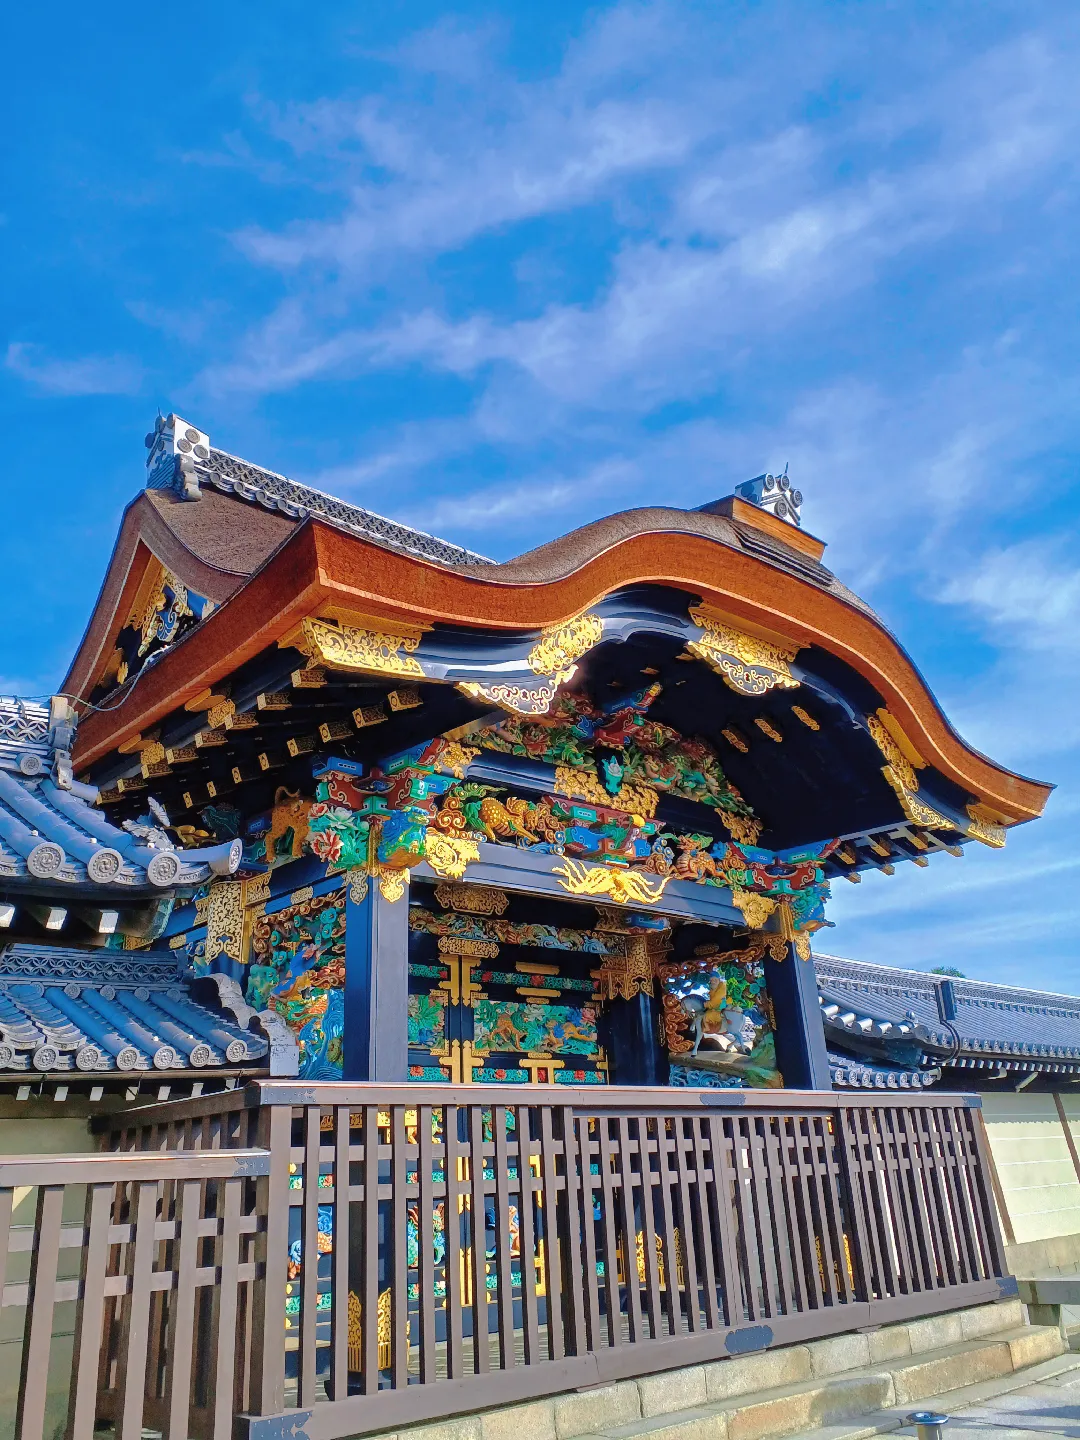 【京都ぶらり】秋晴れの京都から 西本願寺の大銀杏の画像 (1枚目)